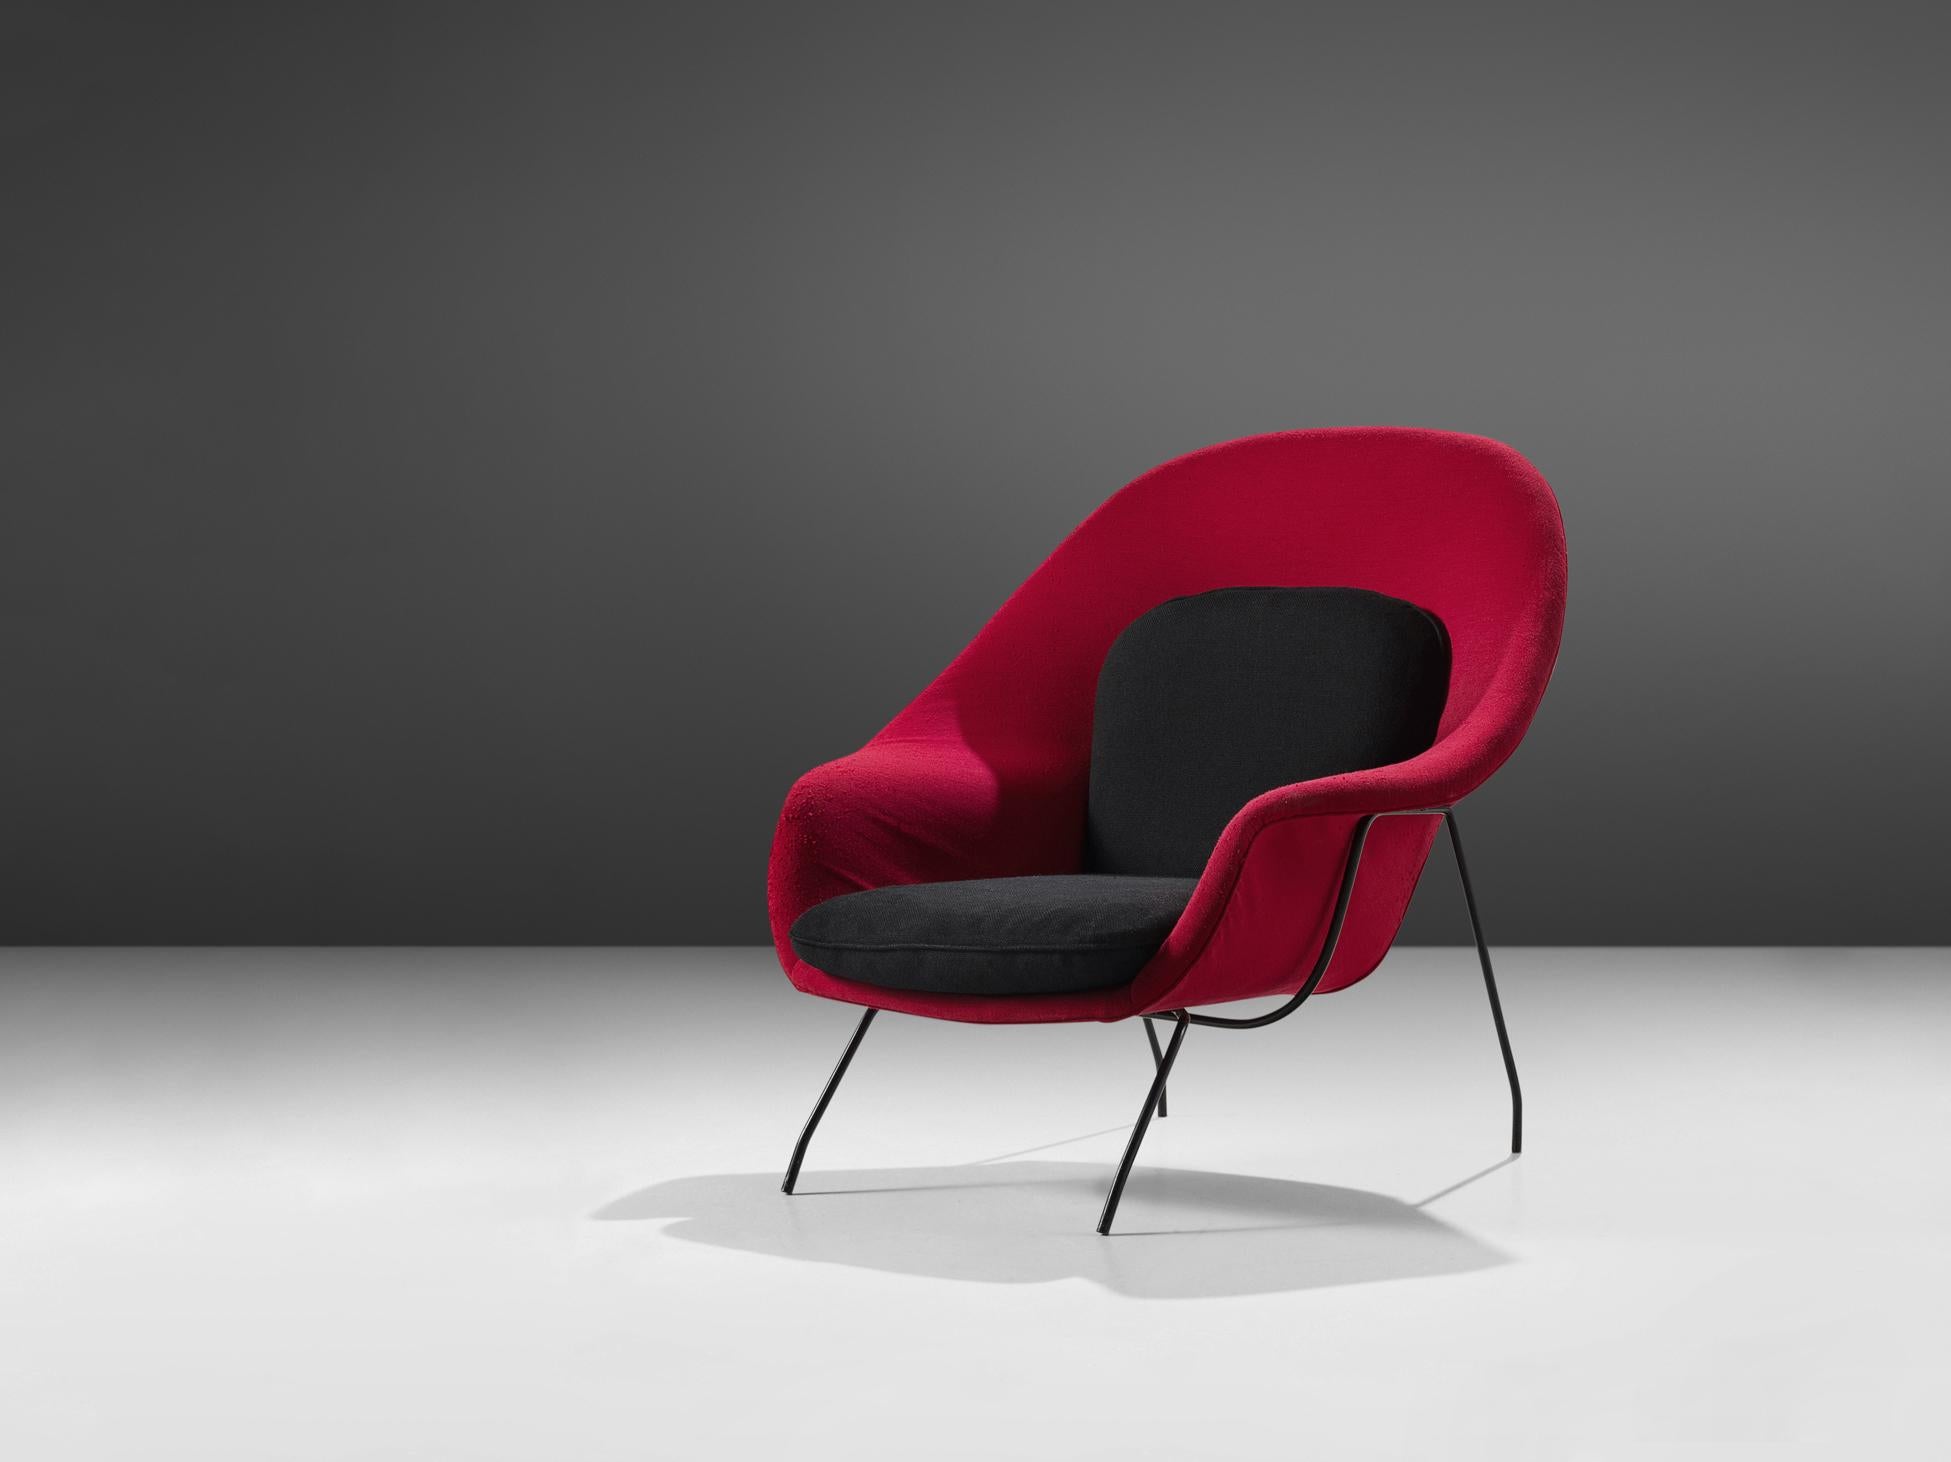 Eero Saarinen pour Knoll, fauteuil 'Womb', tissu, acier enduit, États-Unis, design 1948

Cette chaise longue à coque et à coussin 